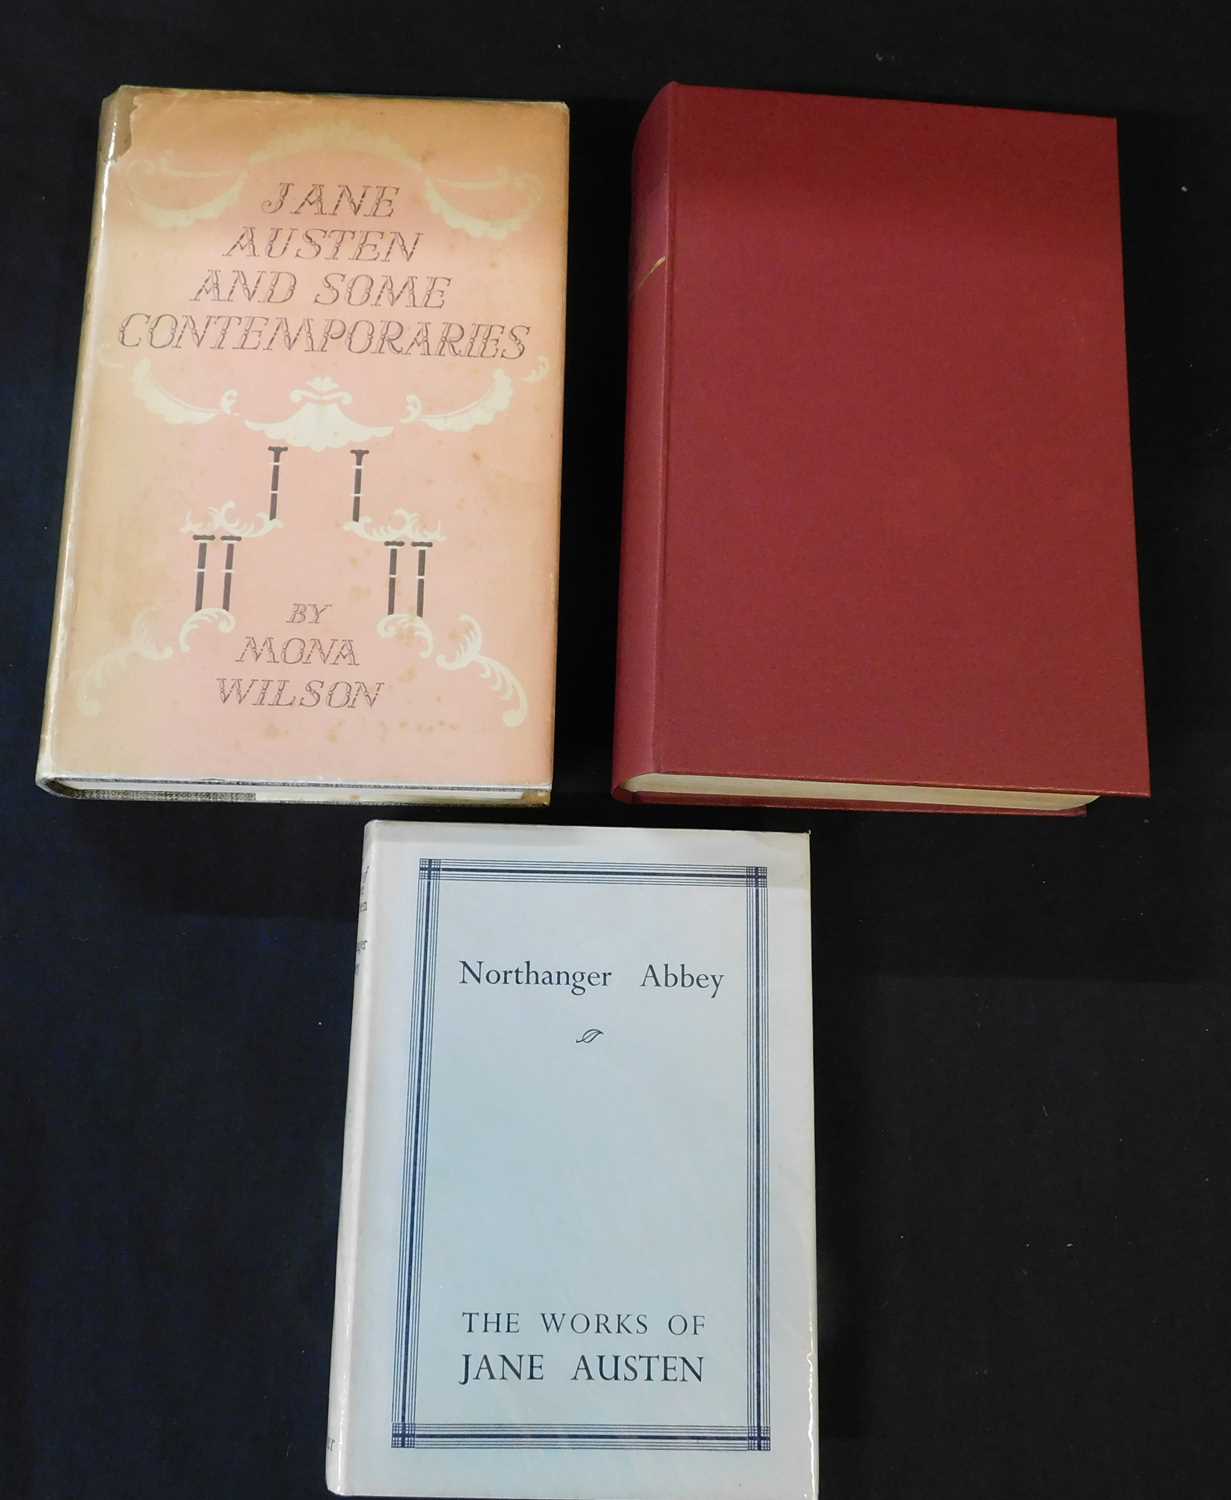 JANE AUSTEN: 2 titles: THE COMPLETE NOVELS, London, William Heinemann, 1932, 2nd edition, rebound,